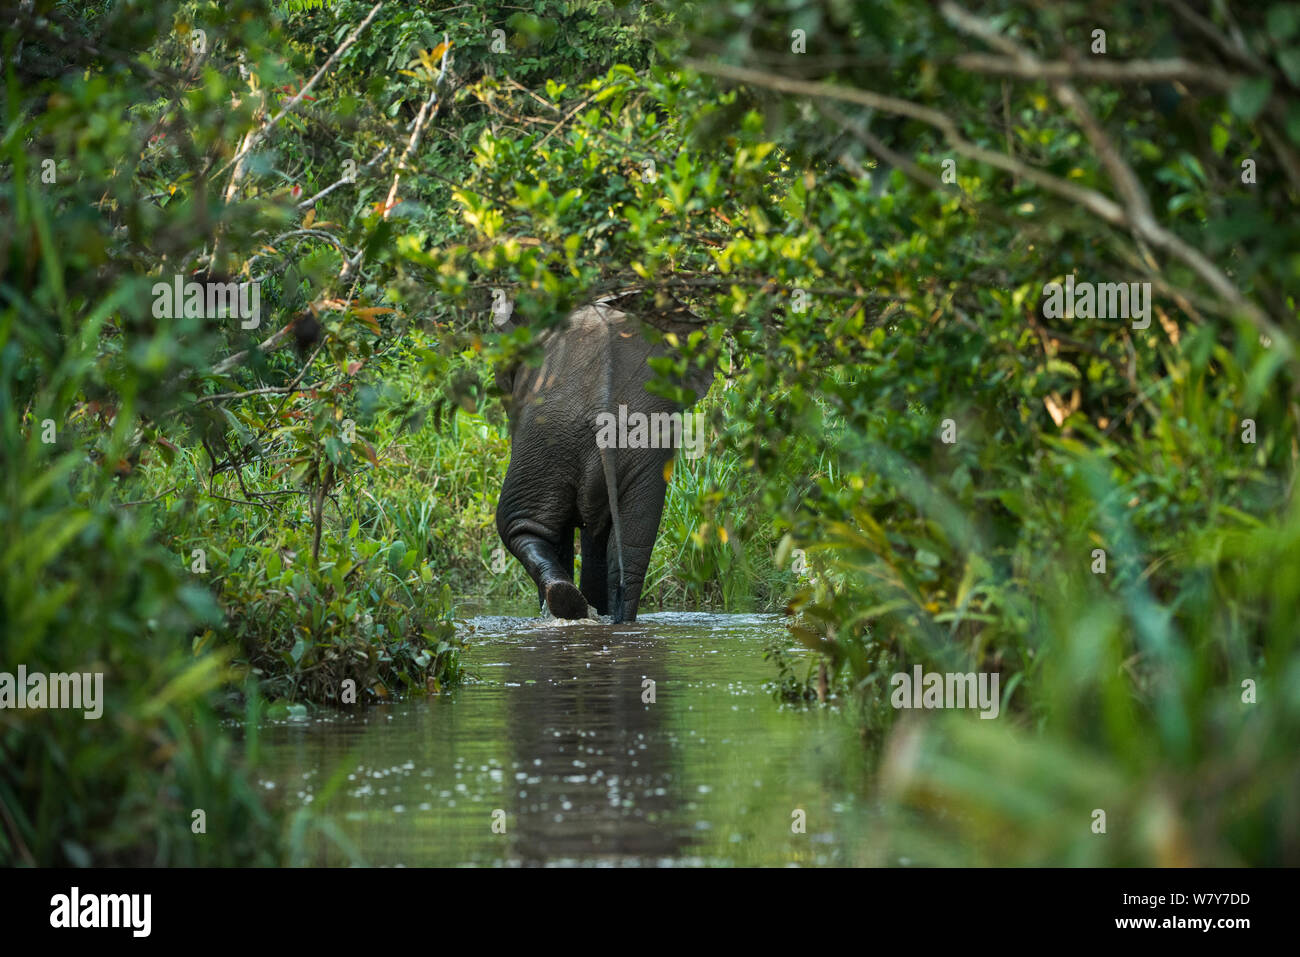 L'éléphant de forêt d'Afrique (Loxodonta cyclotis) Lekoli River, République du Congo (Congo-Brazzaville), l'Afrique. Les espèces vulnérables. Banque D'Images